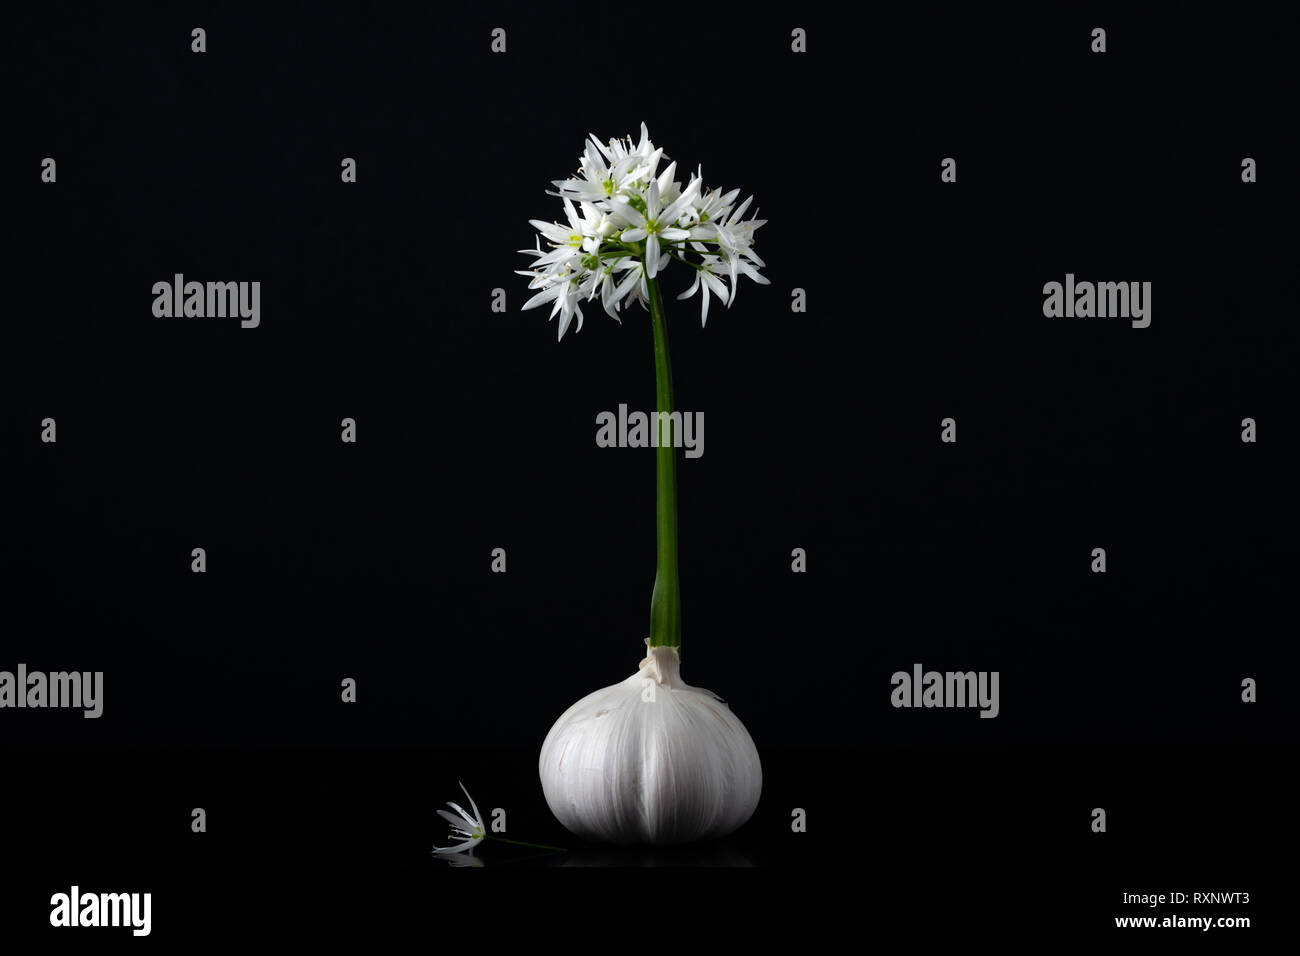 Aglio selvatico testa di fiore o Allium Longicuspis e bulbo d'aglio o Allium sativum come una composizione creativa sul nero. Specie eurasiatica di cipolla selvatica. Foto Stock